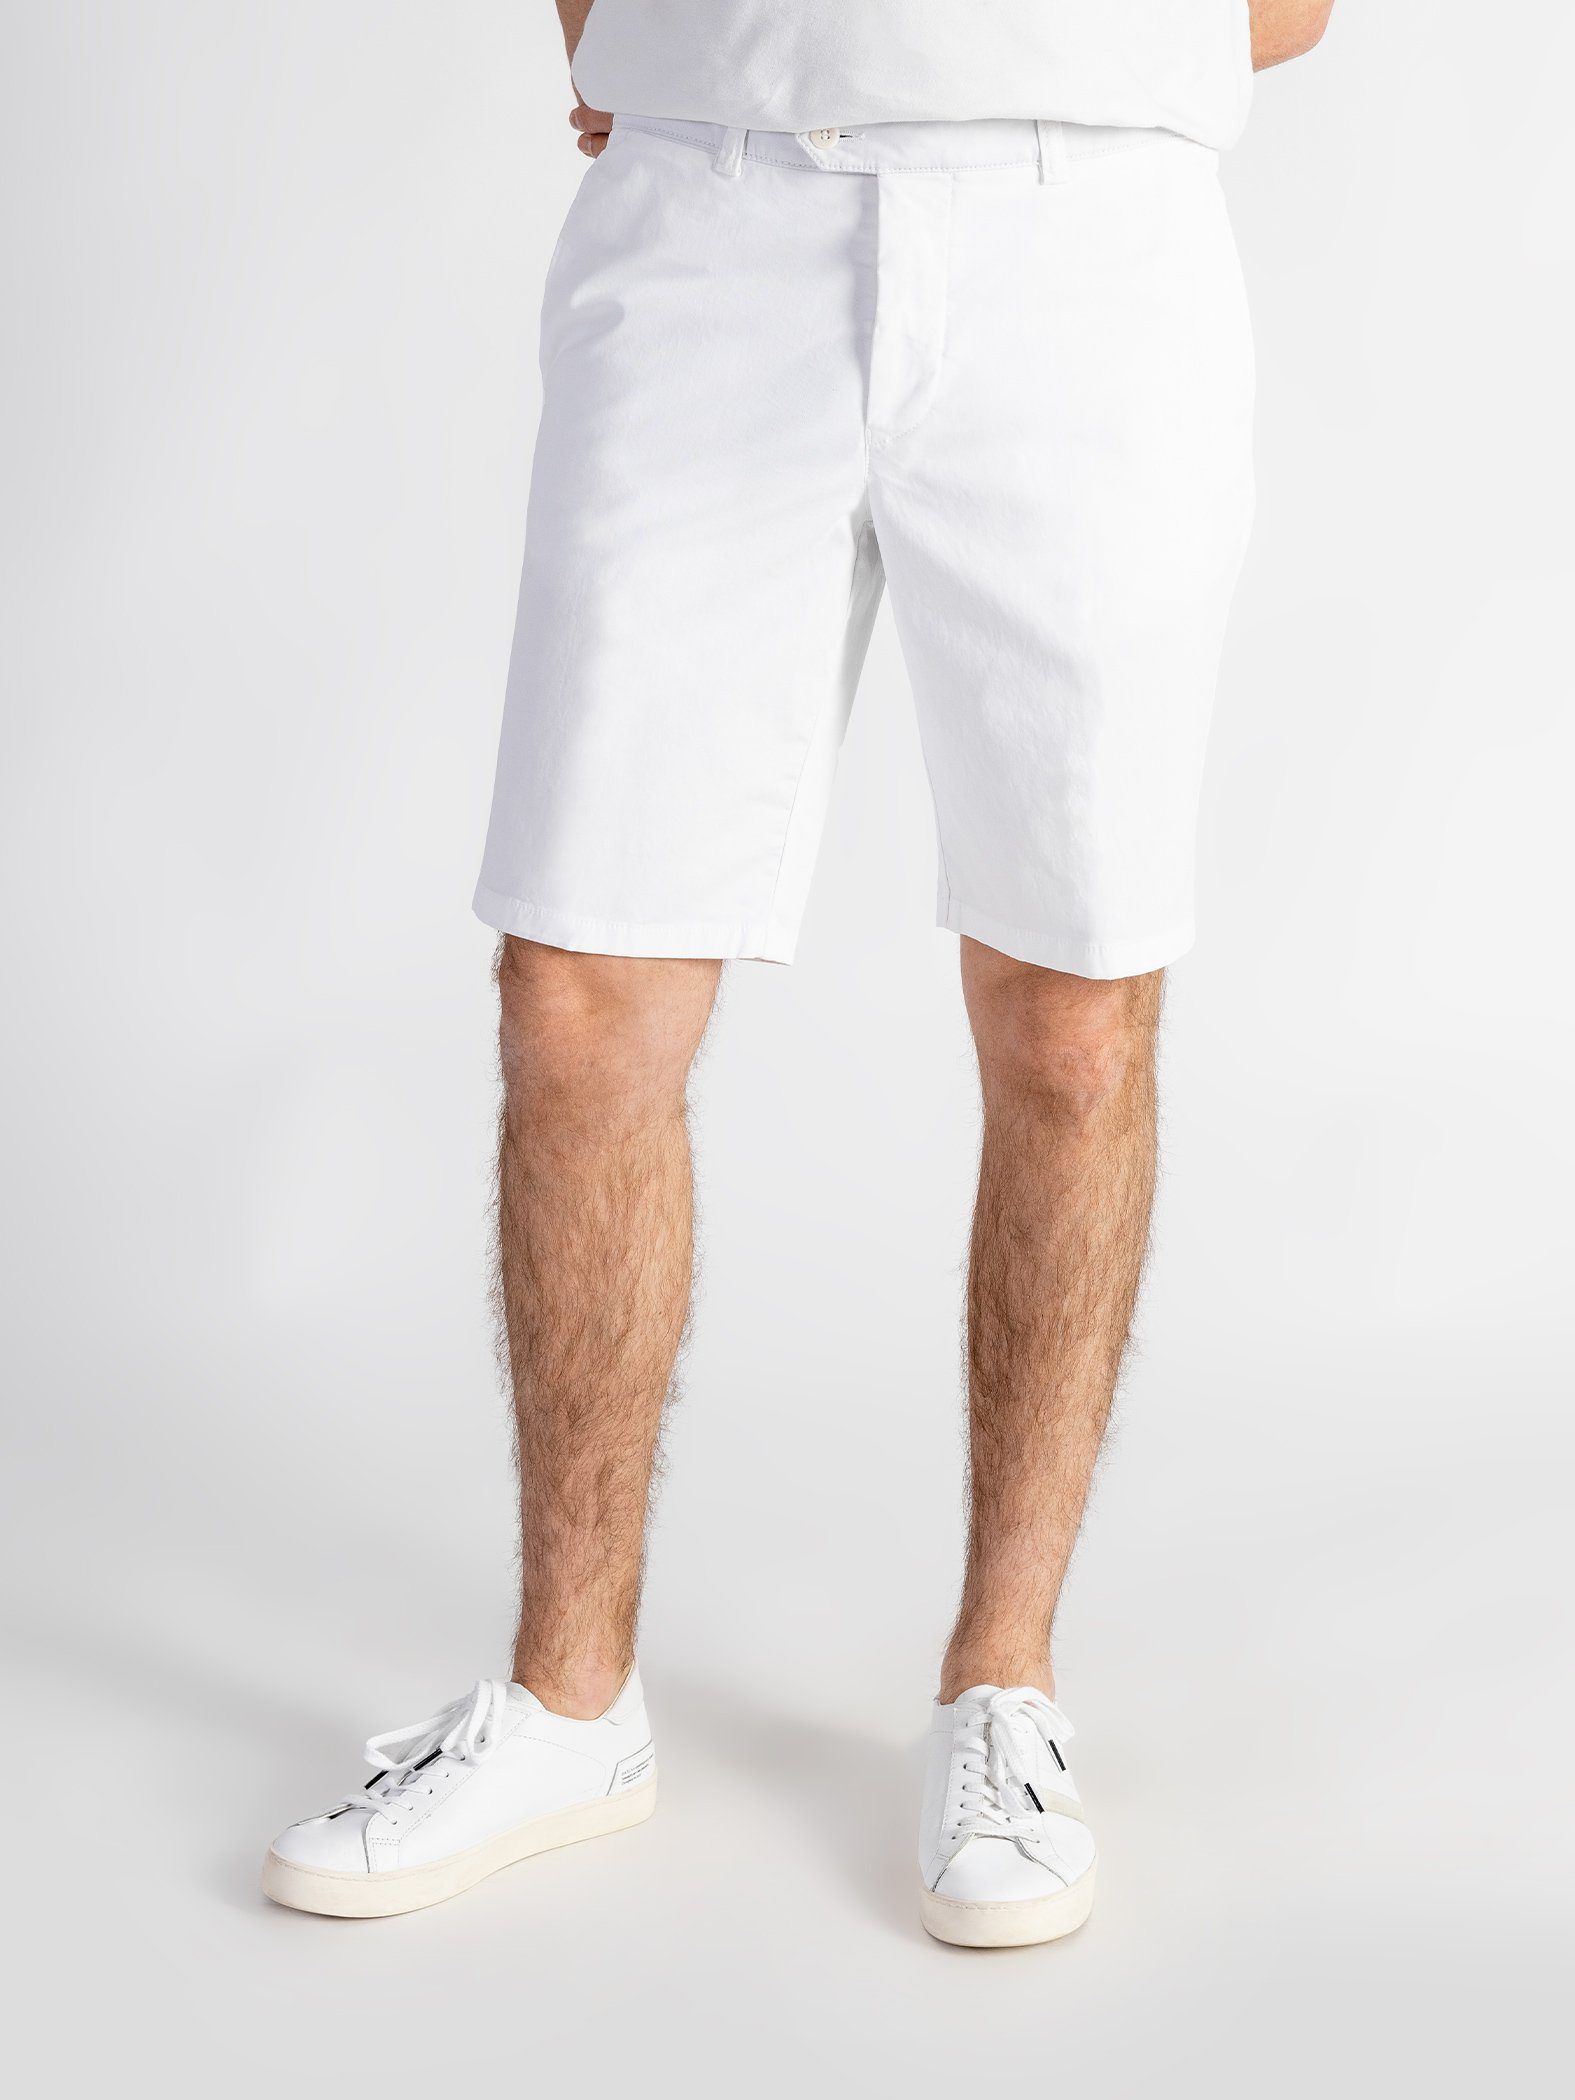 TwoMates Shorts Shorts mit elastischem Bund, Farbauswahl, GOTS-zertifiziert Weiß